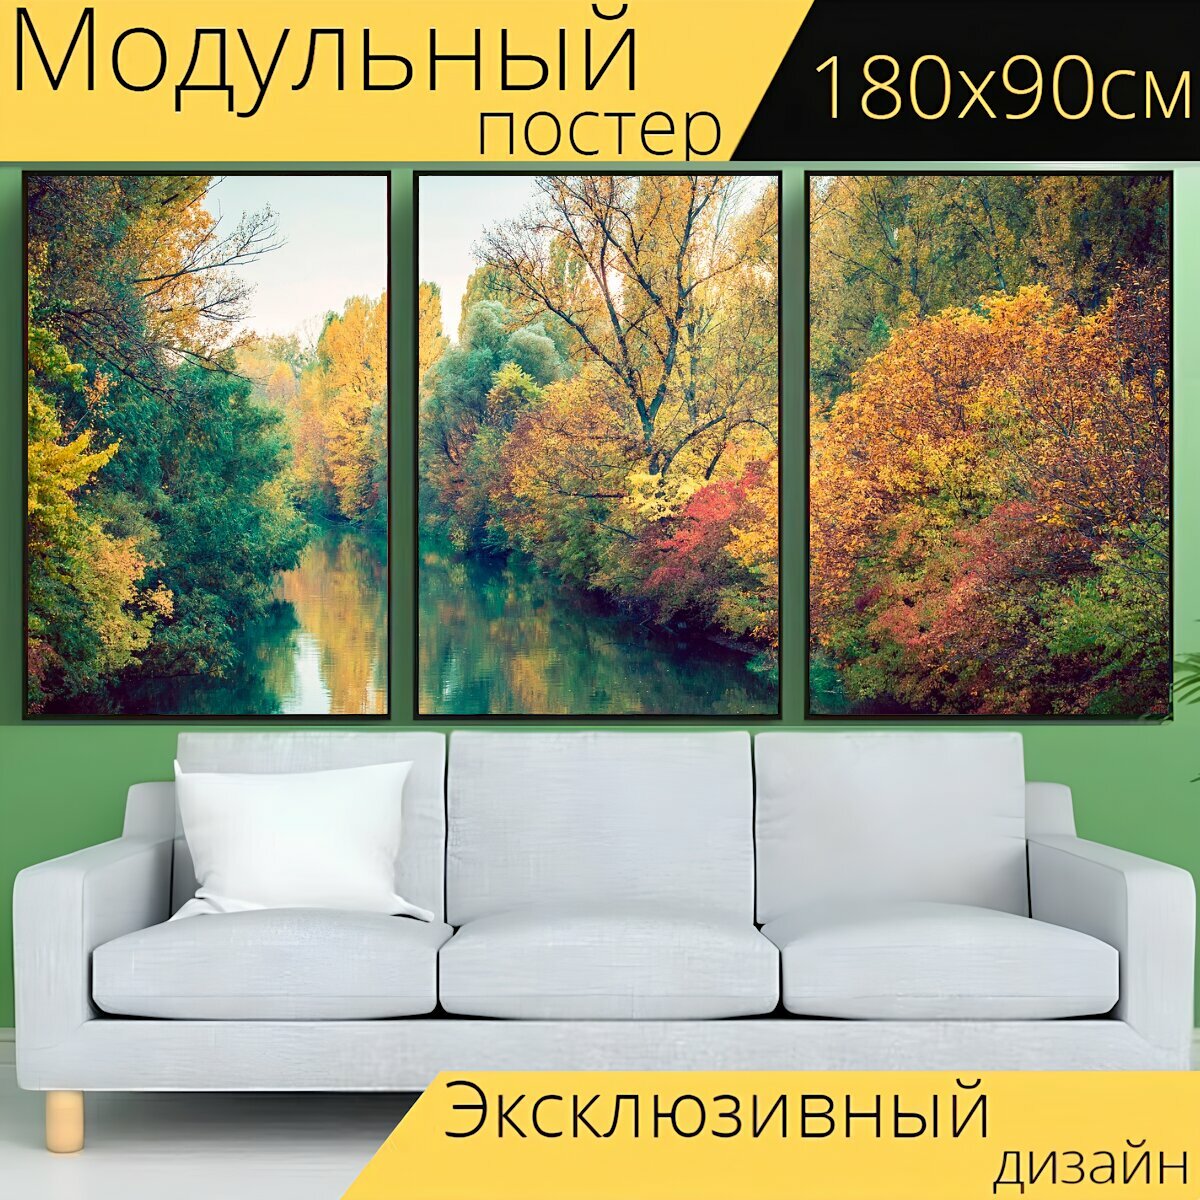 Модульный постер "Осень, зеленый, лес" 180 x 90 см. для интерьера